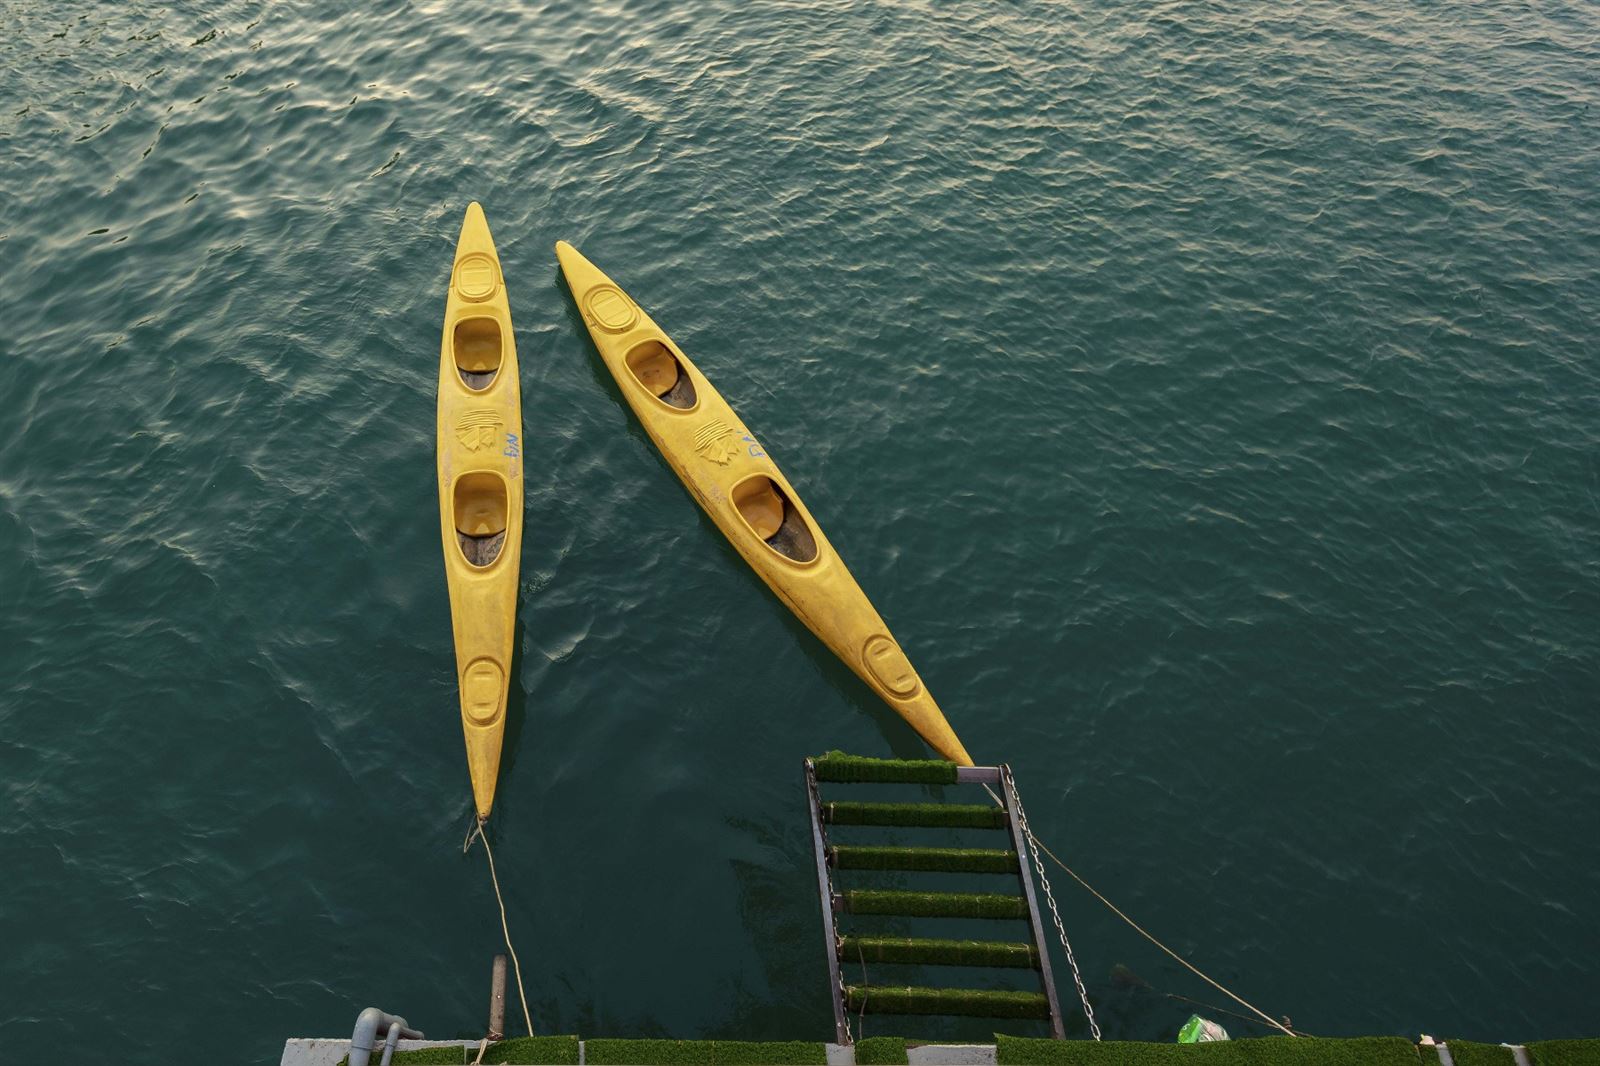 kayak follow sleeping boat